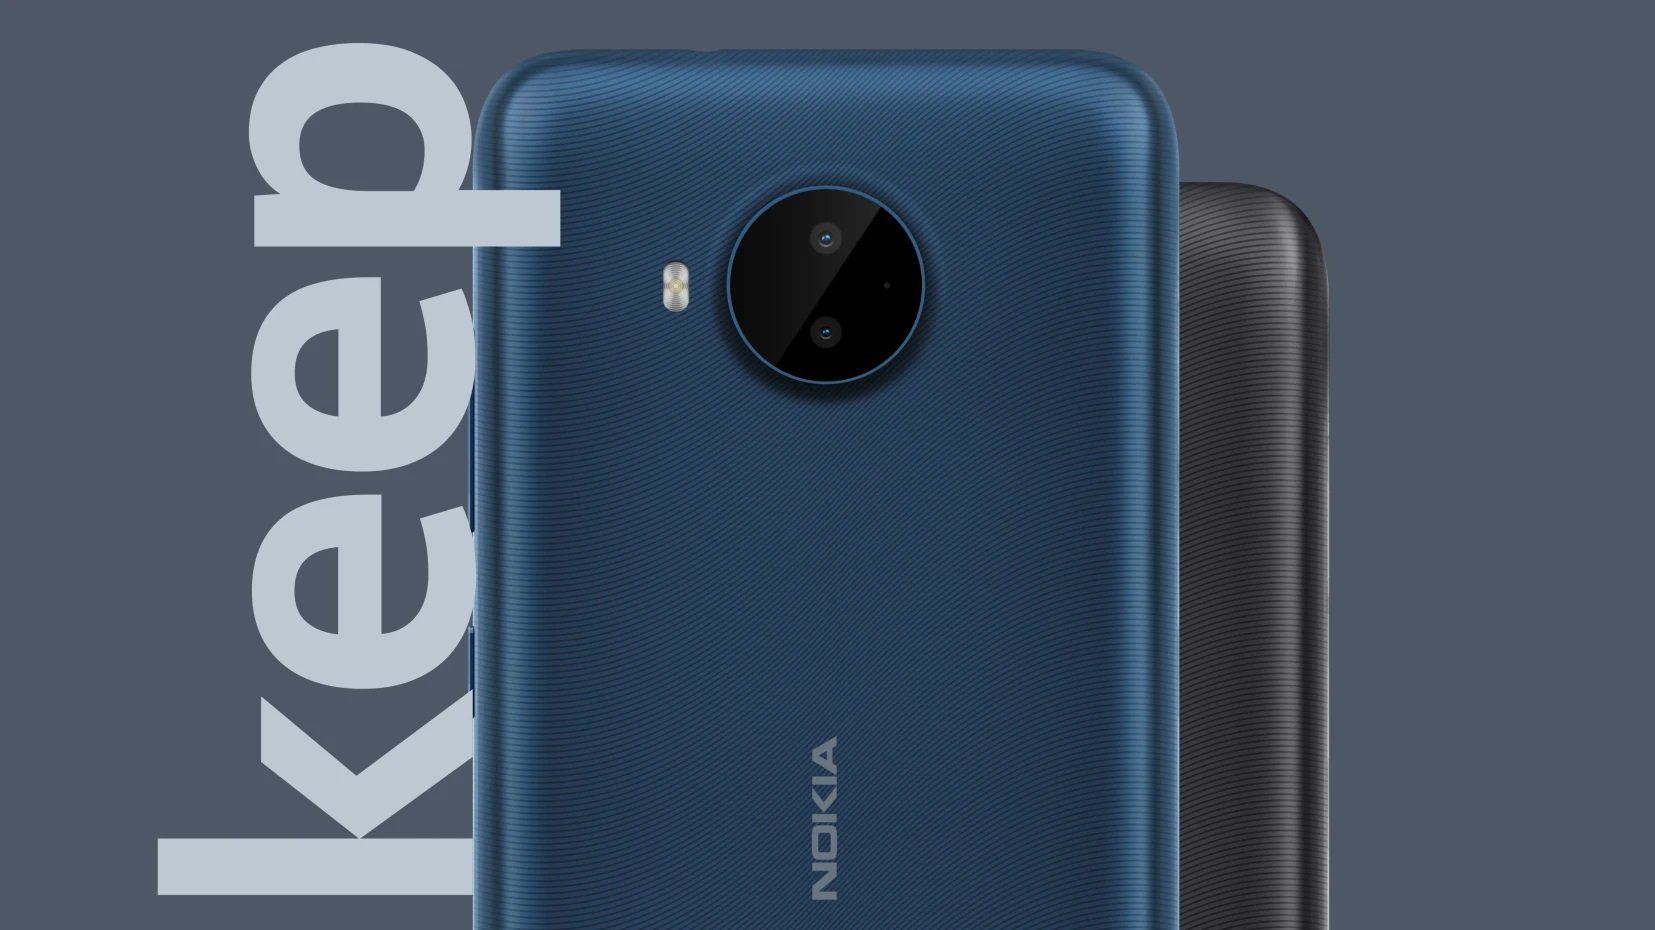 Das neue Nokia C20 Plus ist ein überraschend leistungsstarkes Smartphone mit Android Go 36